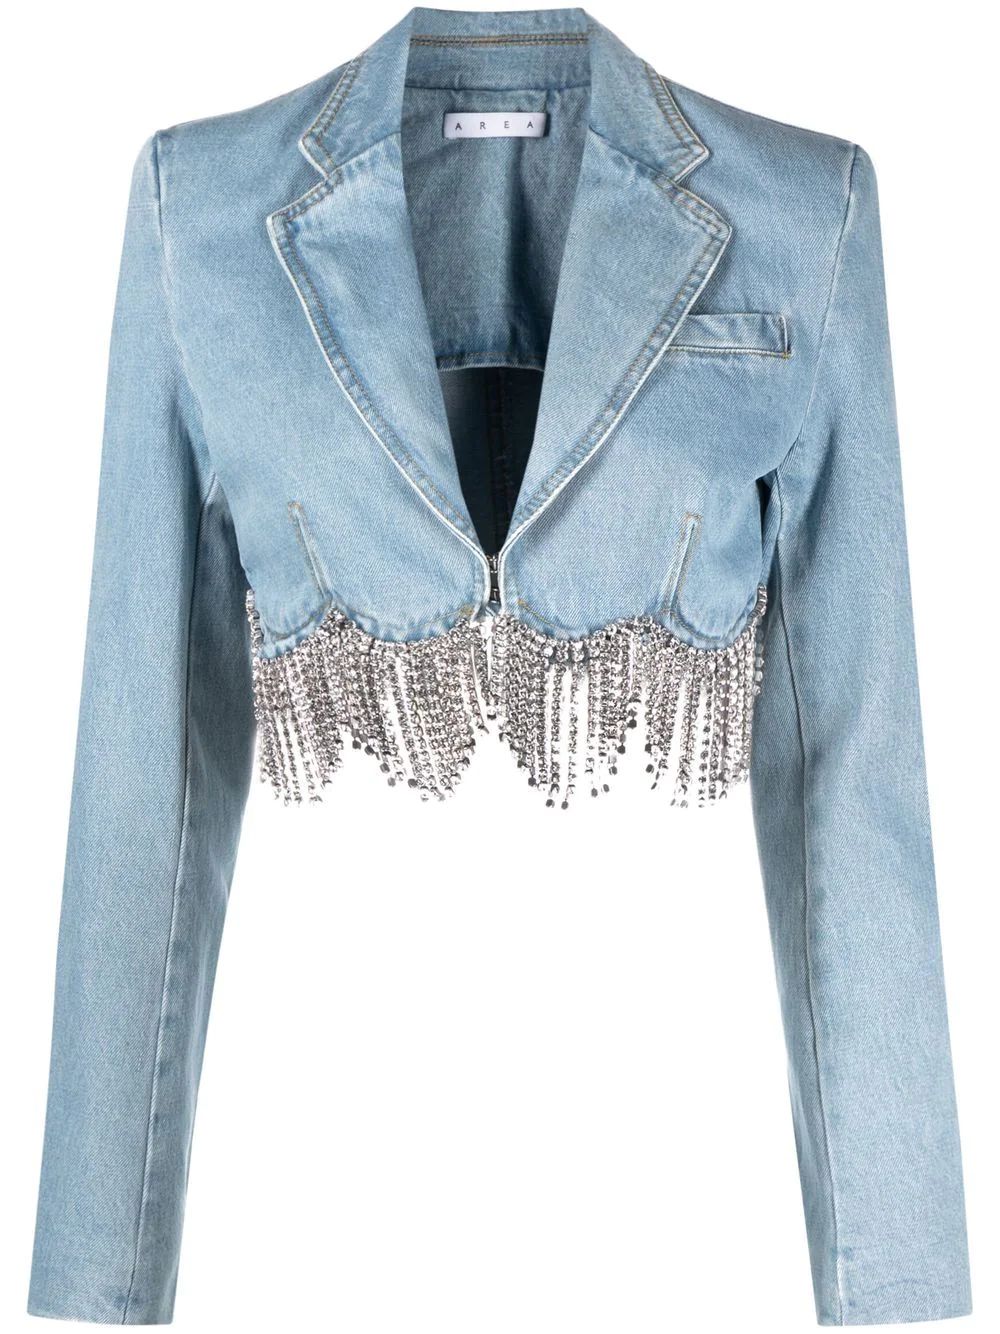 AREA crystal-embellished Cropped Denim Jacket - Farfetch | Farfetch Global